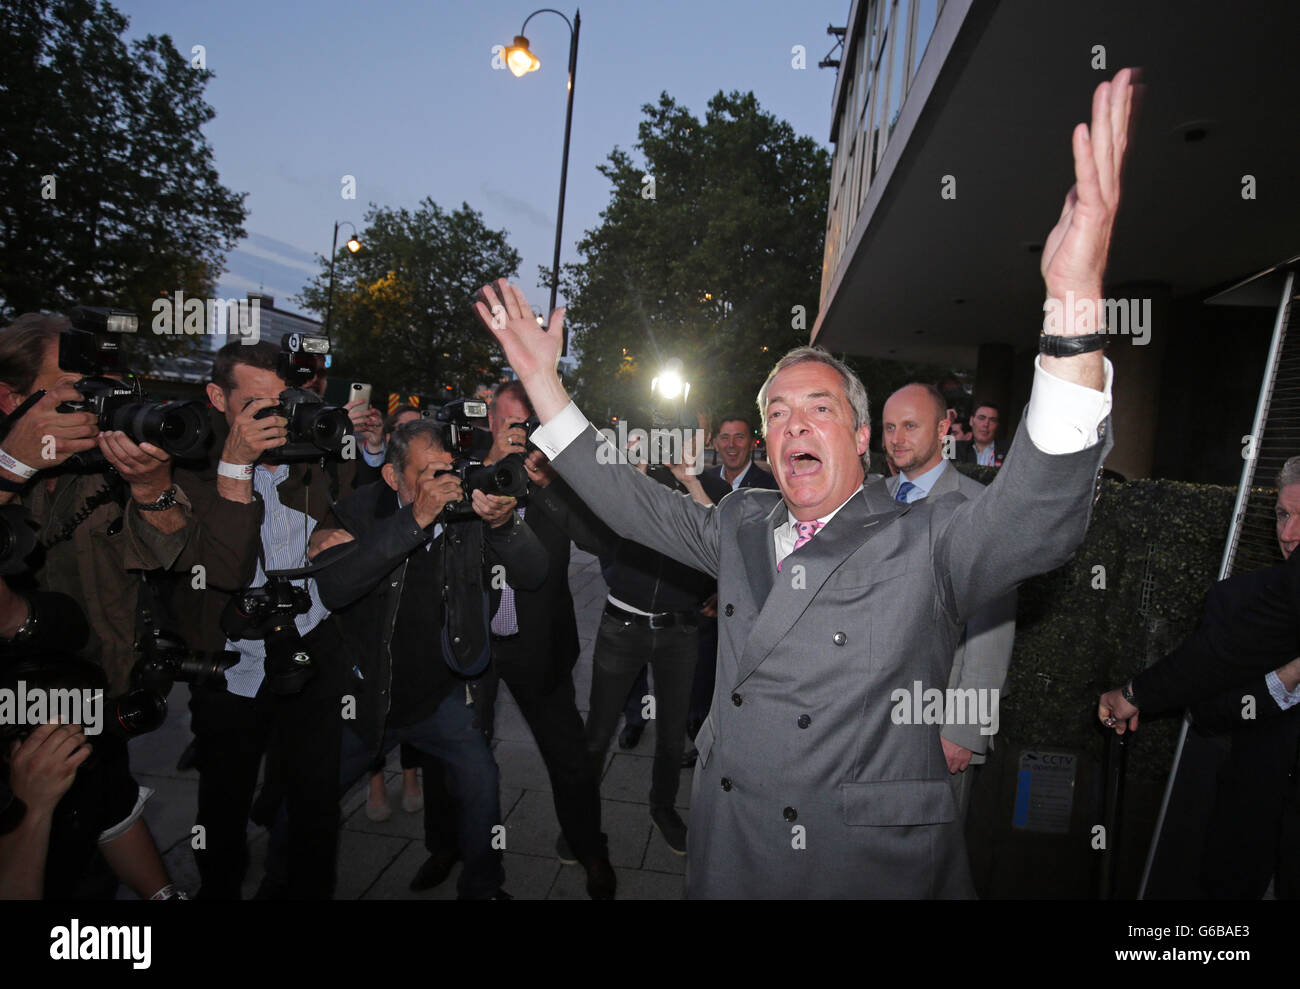 London, Großbritannien. 24. Juni 2016. Nigel Farage, Vorsitzender der UK Independence Party (UKIP), lächelt, als er eine Leave.EU Referendum Party in London, Großbritannien, 24. Juni 2016 verlässt. In einem Referendum am 23. Juni haben die Briten mit einer knappen Mehrheit der Europäischen Union (EU) verlassen gestimmt. Foto: MICHAEL KAPPELER/Dpa/Alamy Live News Stockfoto